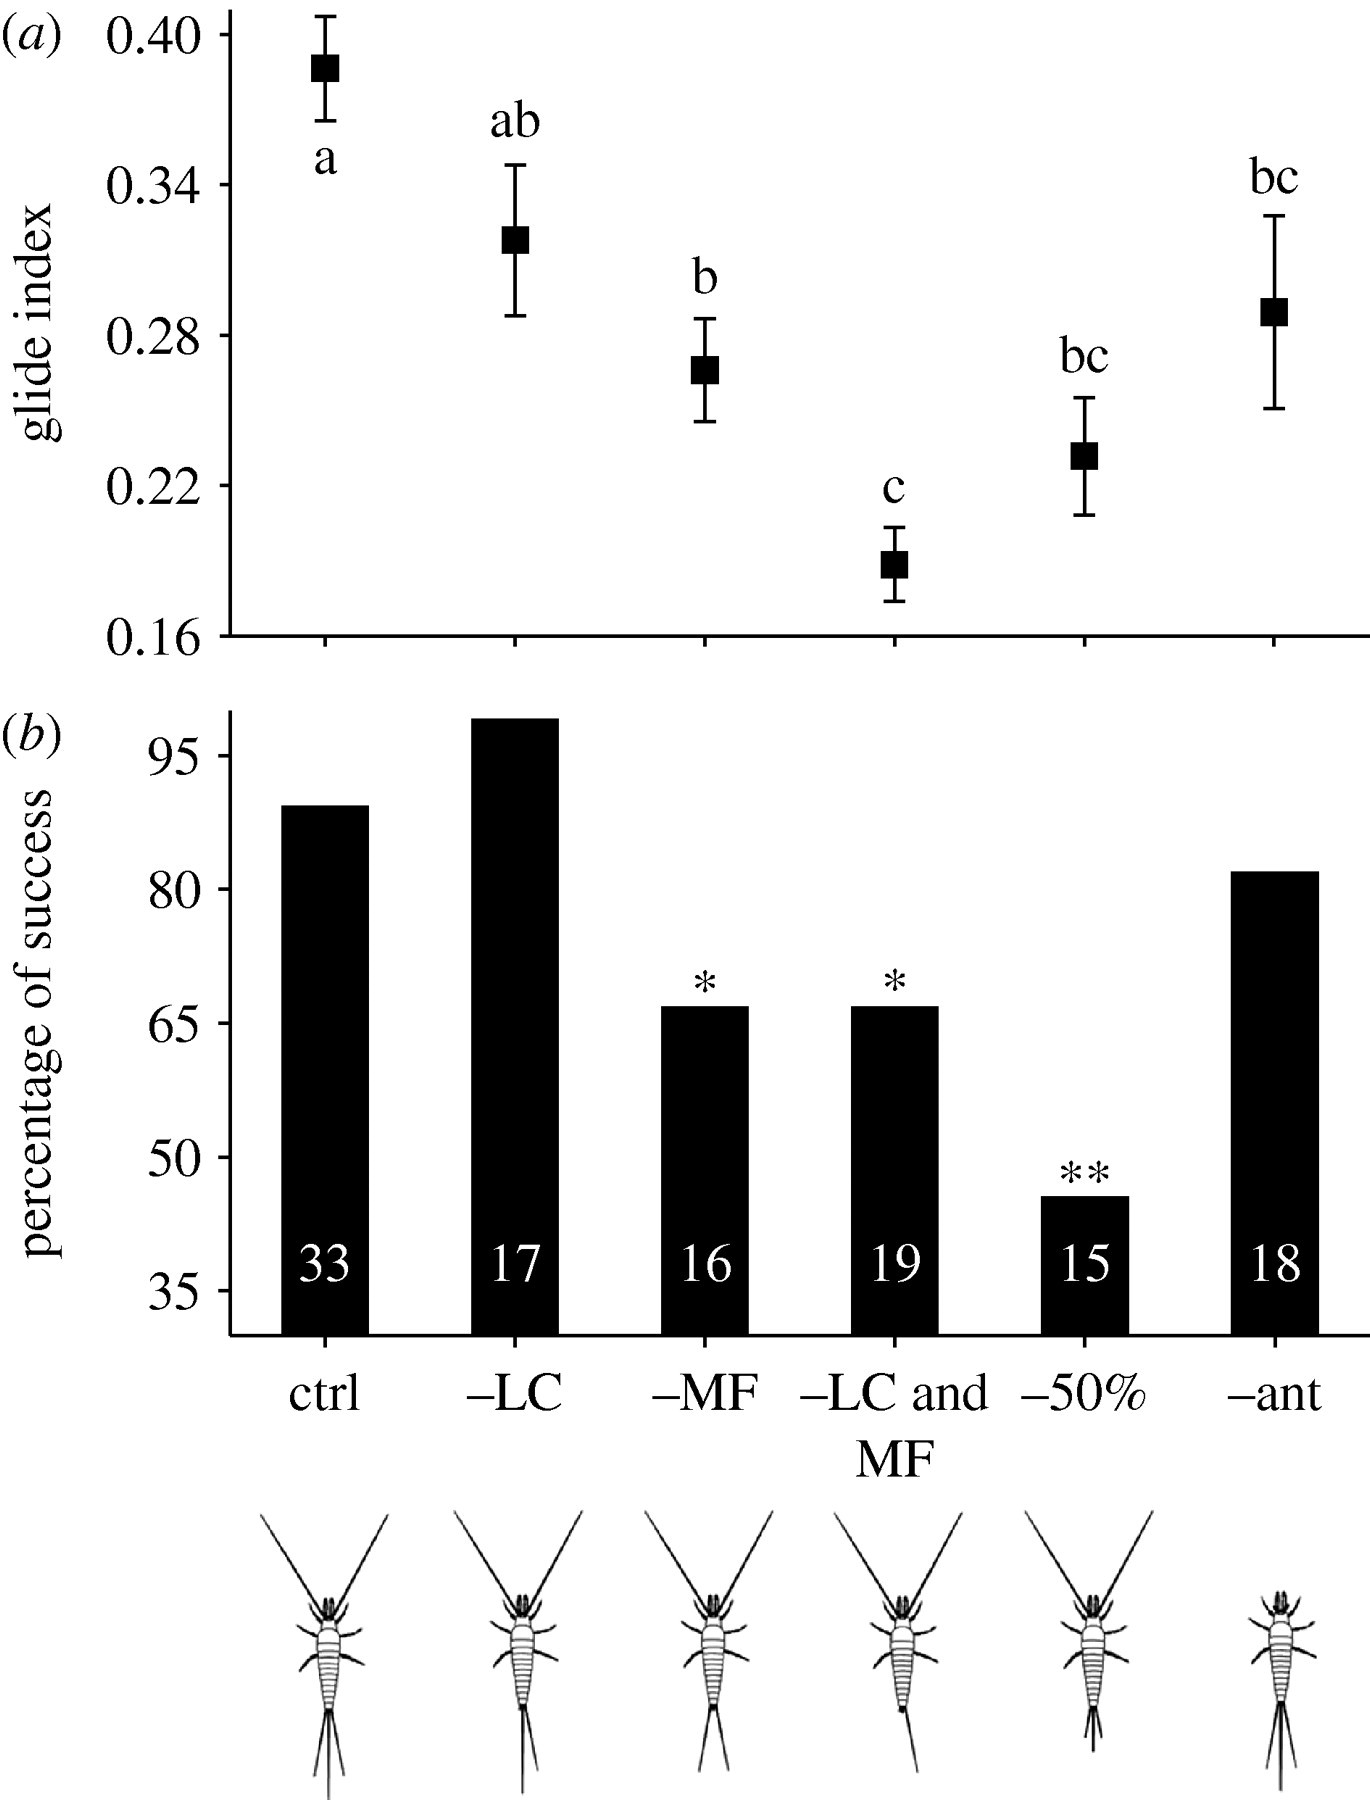 Performance et index de chute contrôlée d'archéognathes (amputés ou non), Yanoviak et al., 2009